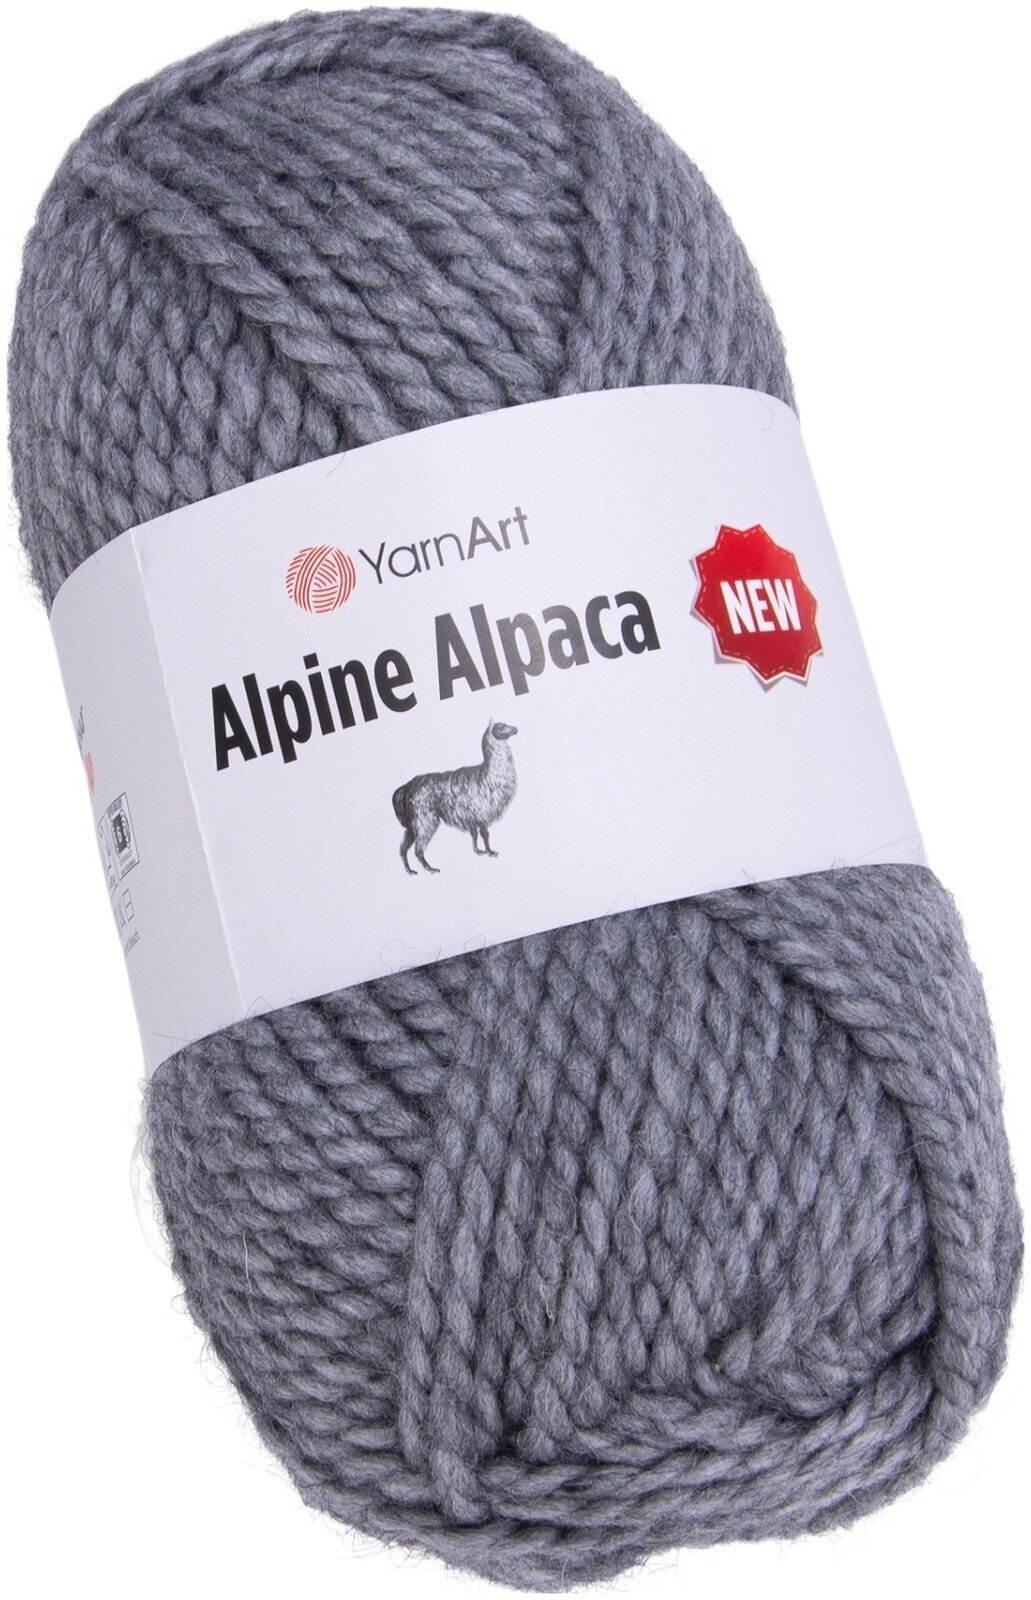 Strikkegarn Yarn Art Alpine Alpaca 1447